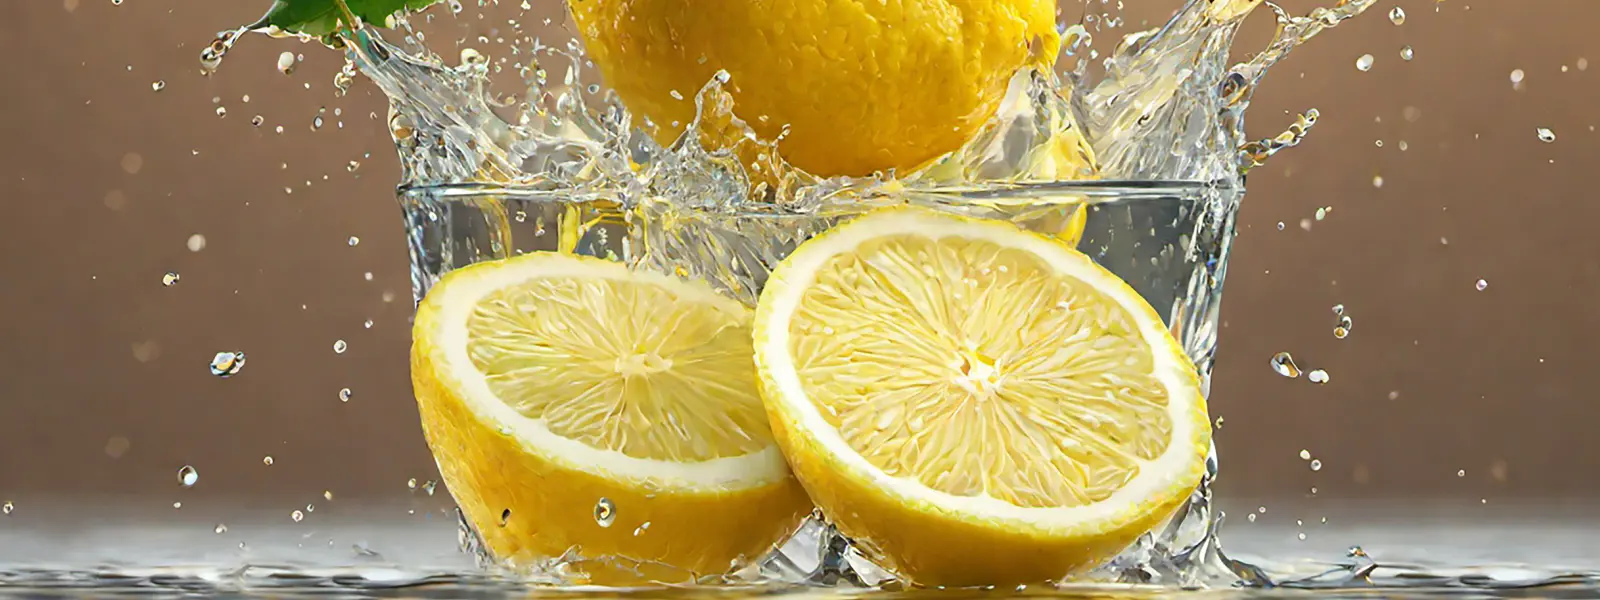 Limonlu Su Ne Kadar Tüketilir?